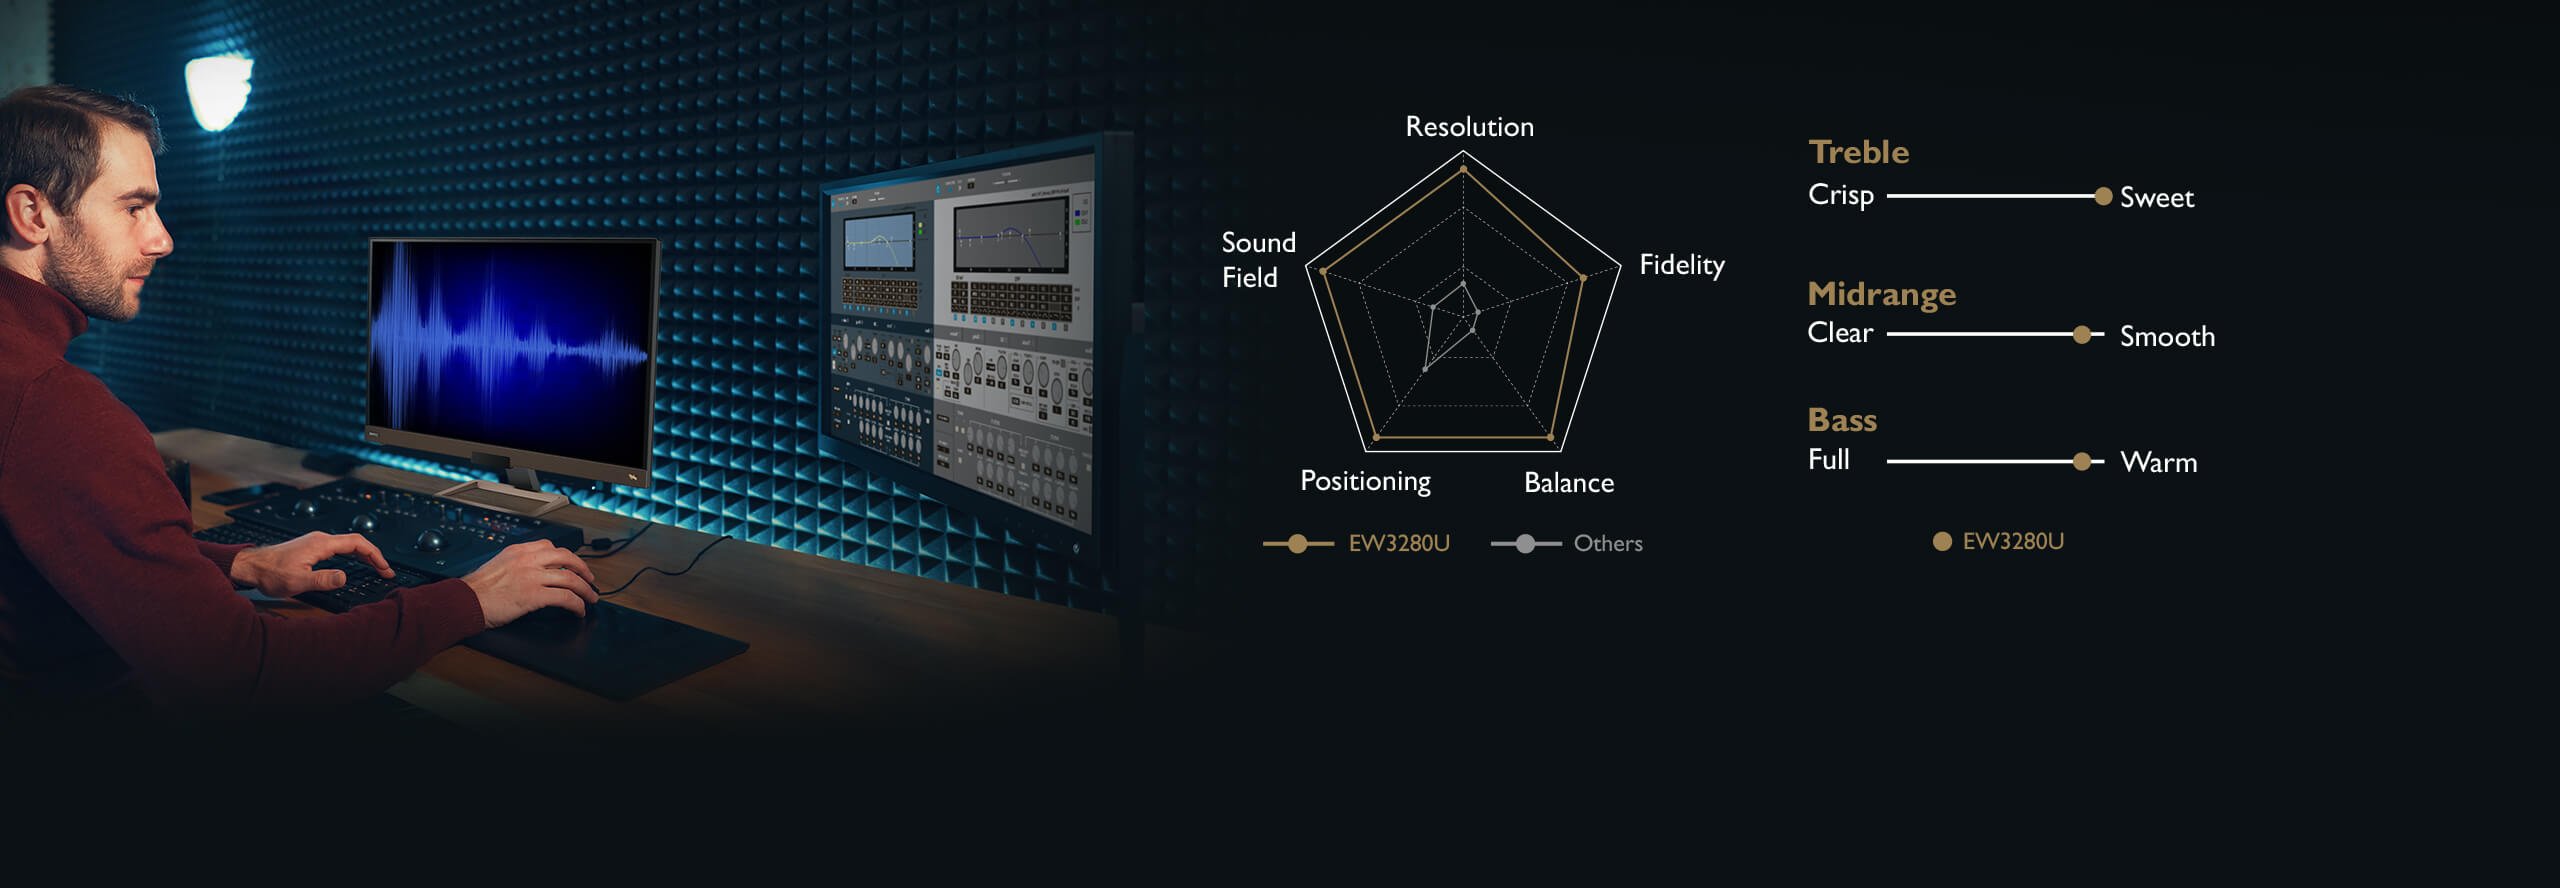 Màn hình giải trí EW3280U 144Hz đem đến chất lượng âm thanh tuyệt hảo.